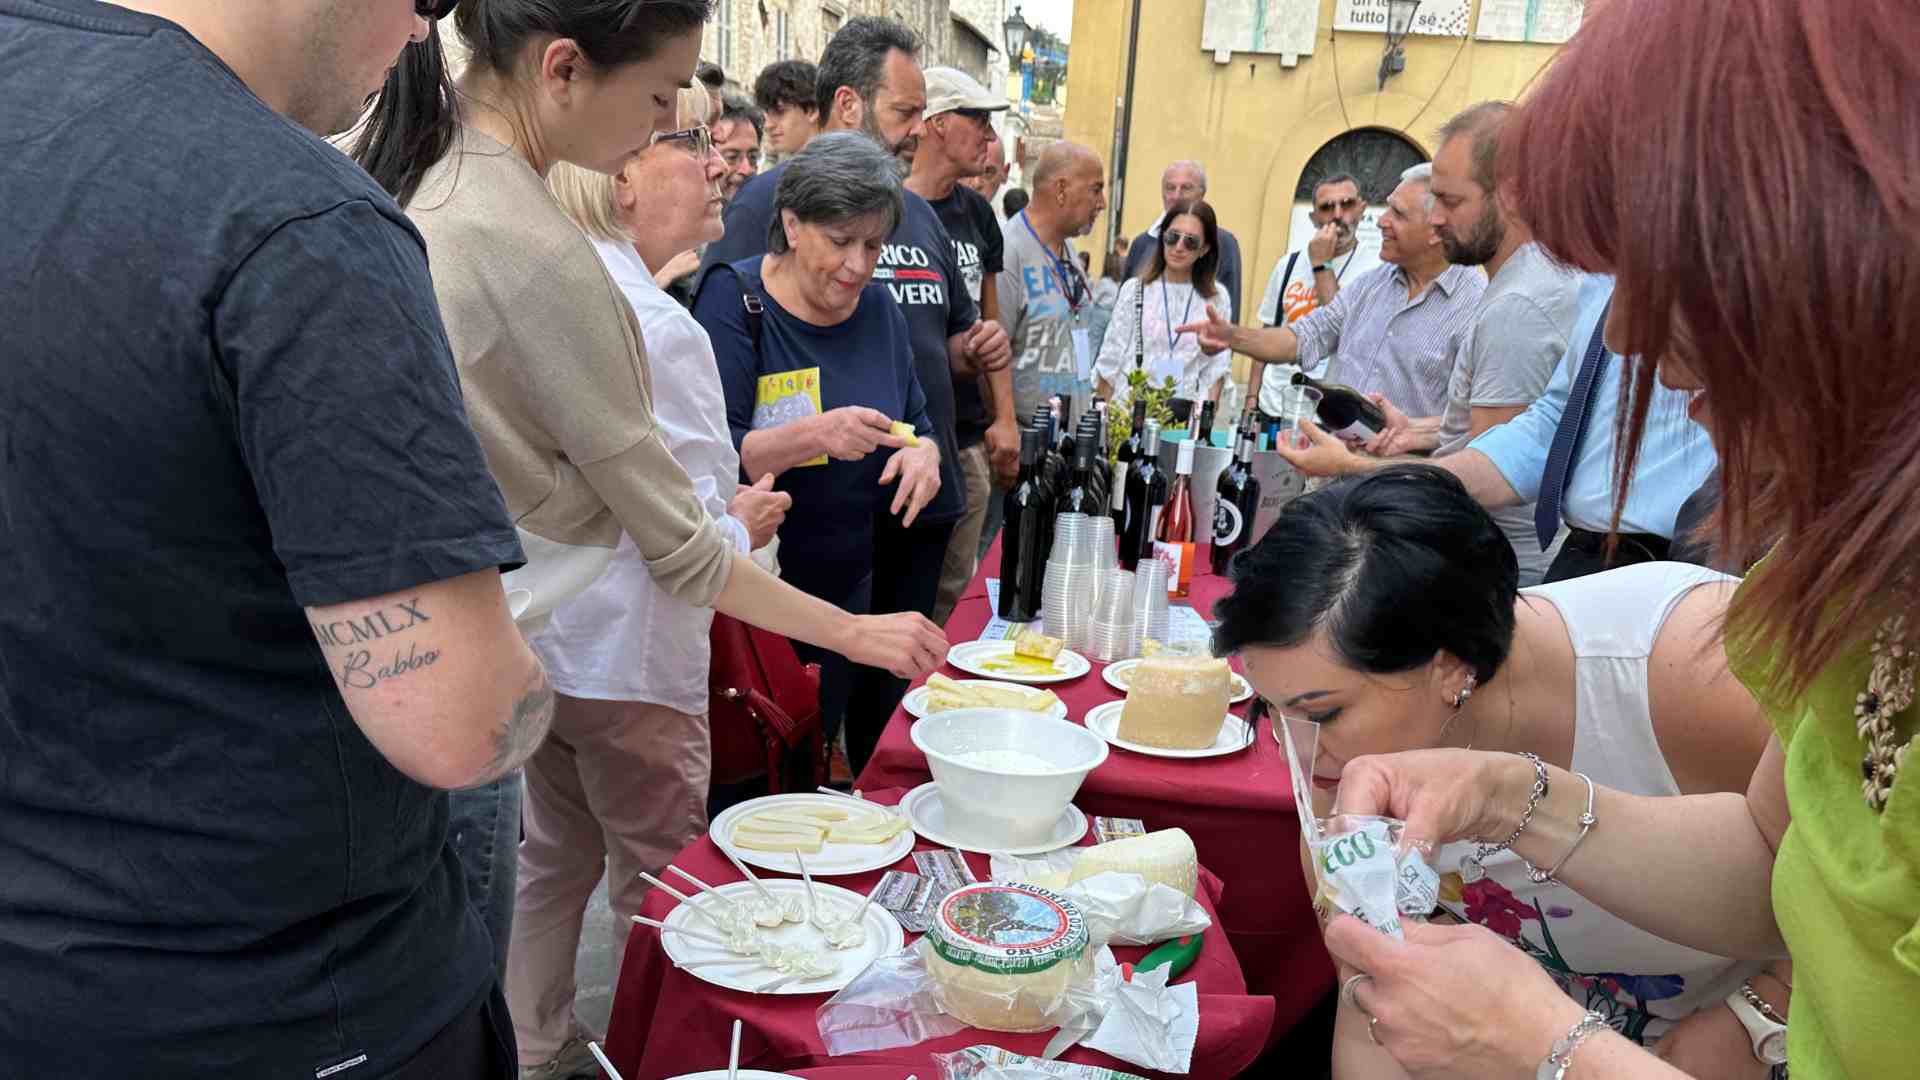 L'inizio della degustazione durante l'evento Degusta Otricoli a Narni in collaborazione con il ristorante Mamarama